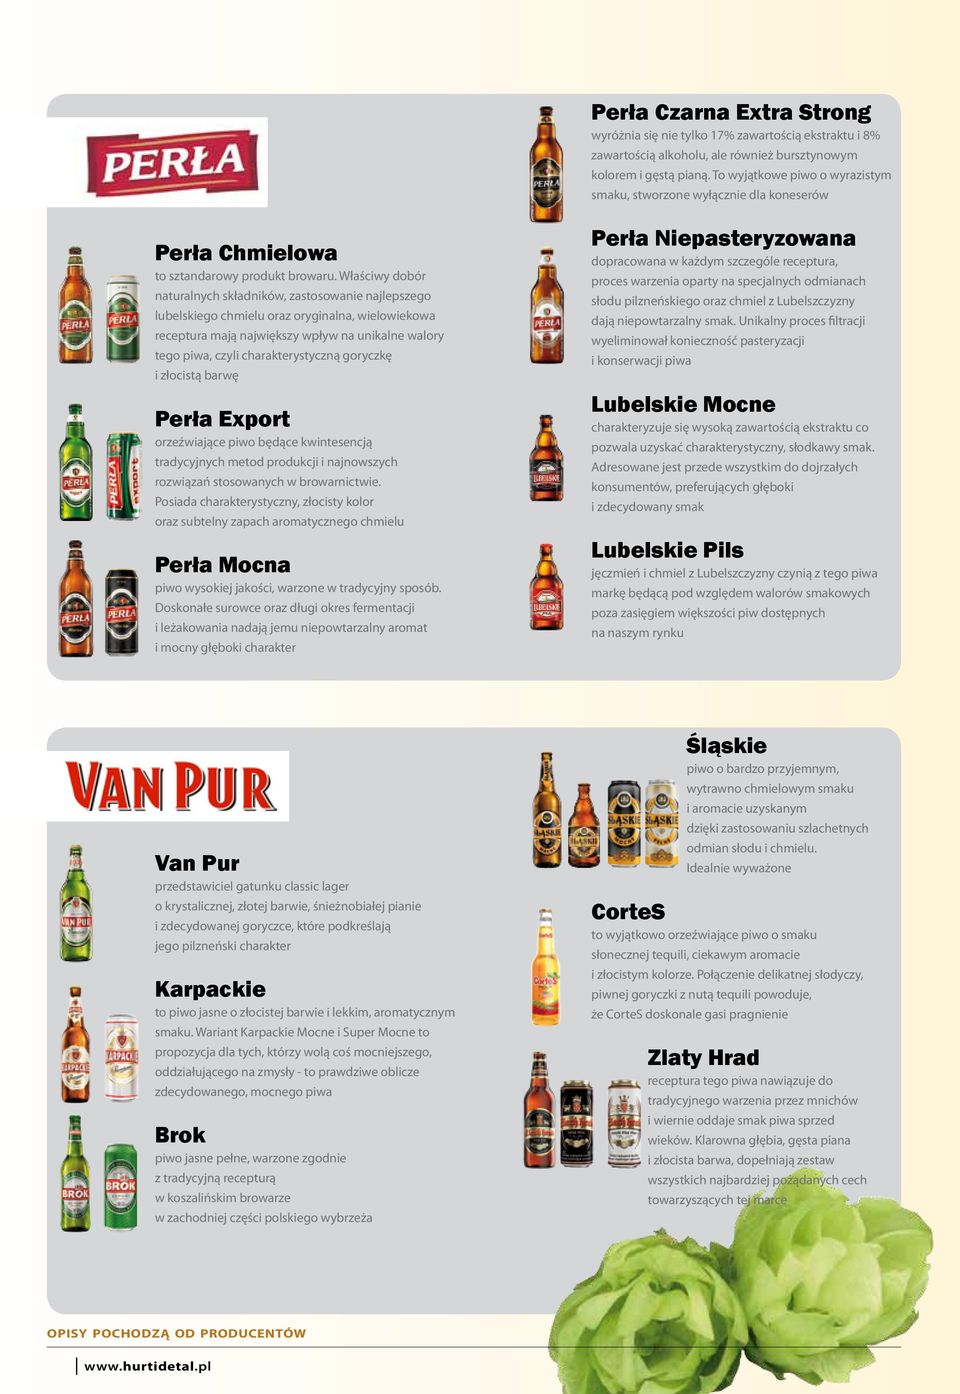 Właściwy dobór naturalnych składników, zastosowanie najlepszego lubelskiego chmielu oraz oryginalna, wielowiekowa receptura mają największy wpływ na unikalne walory tego piwa, czyli charakterystyczną